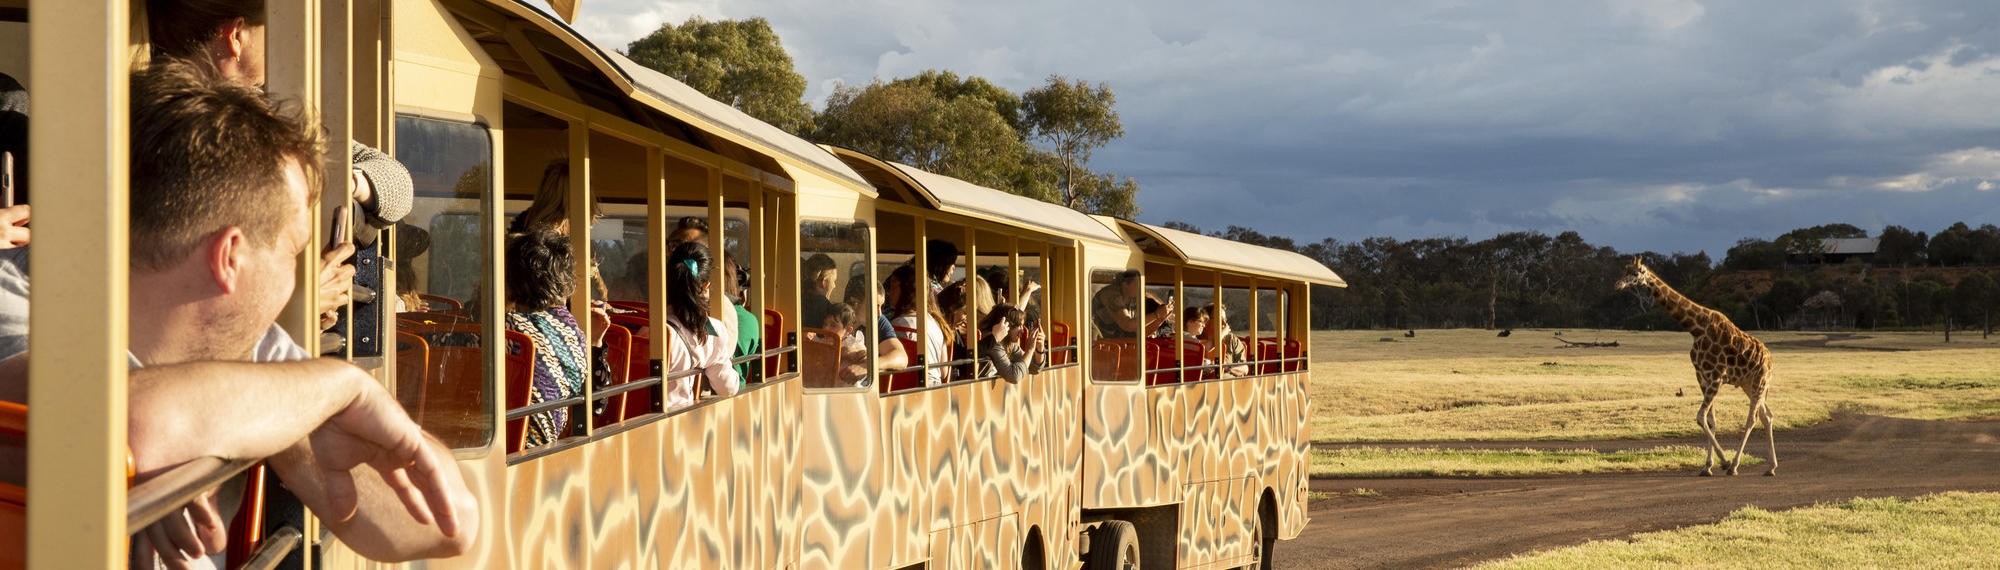 Visitors on a safari bus looking at a giraffe on the Savannah at Werribee Open Range Zoo.